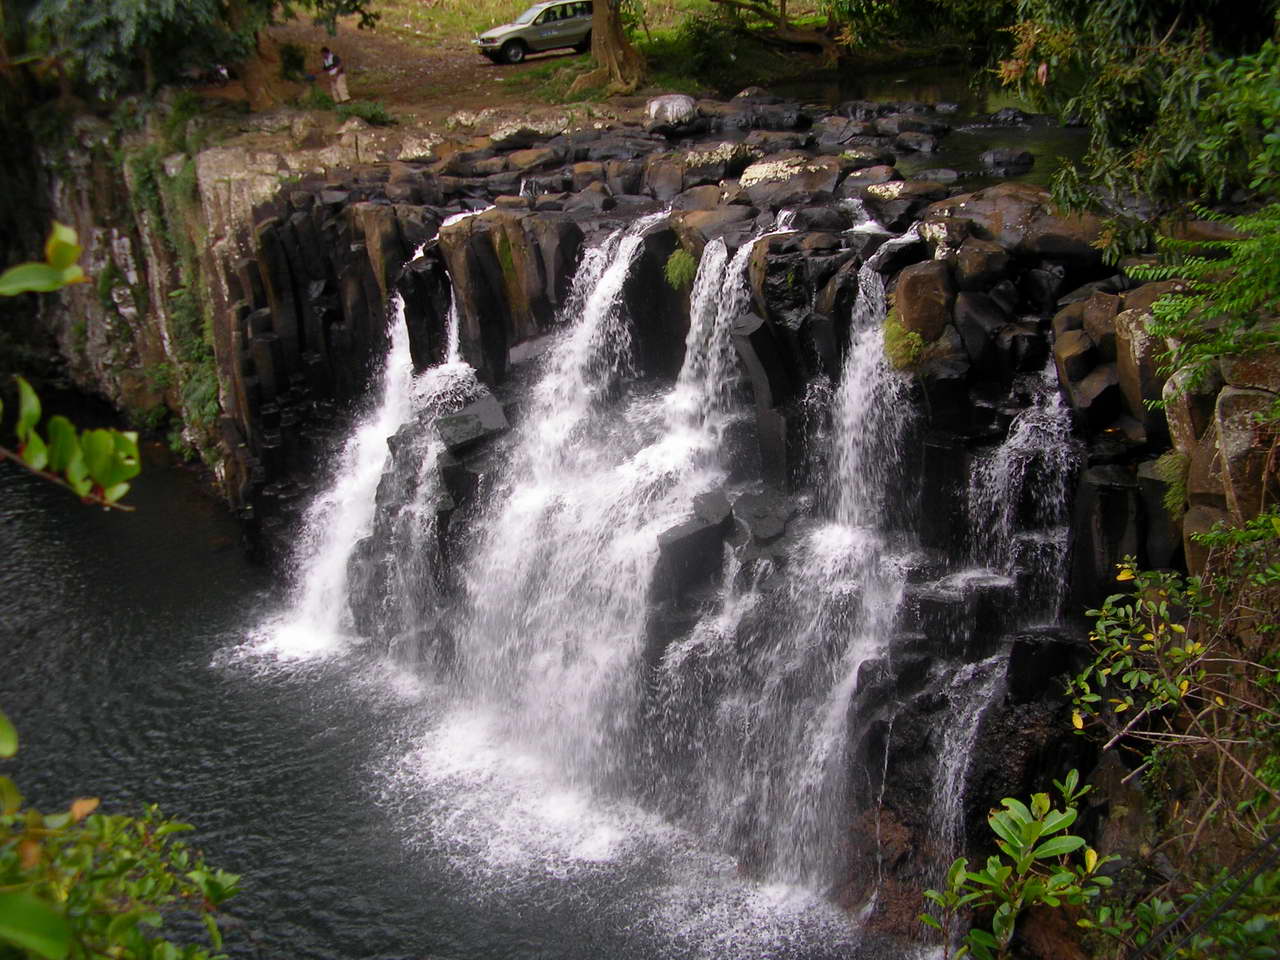 Прыгая по каменным ступеням водопада Рочестер Фолс, водные потоки издают красивый мелодичный гул.